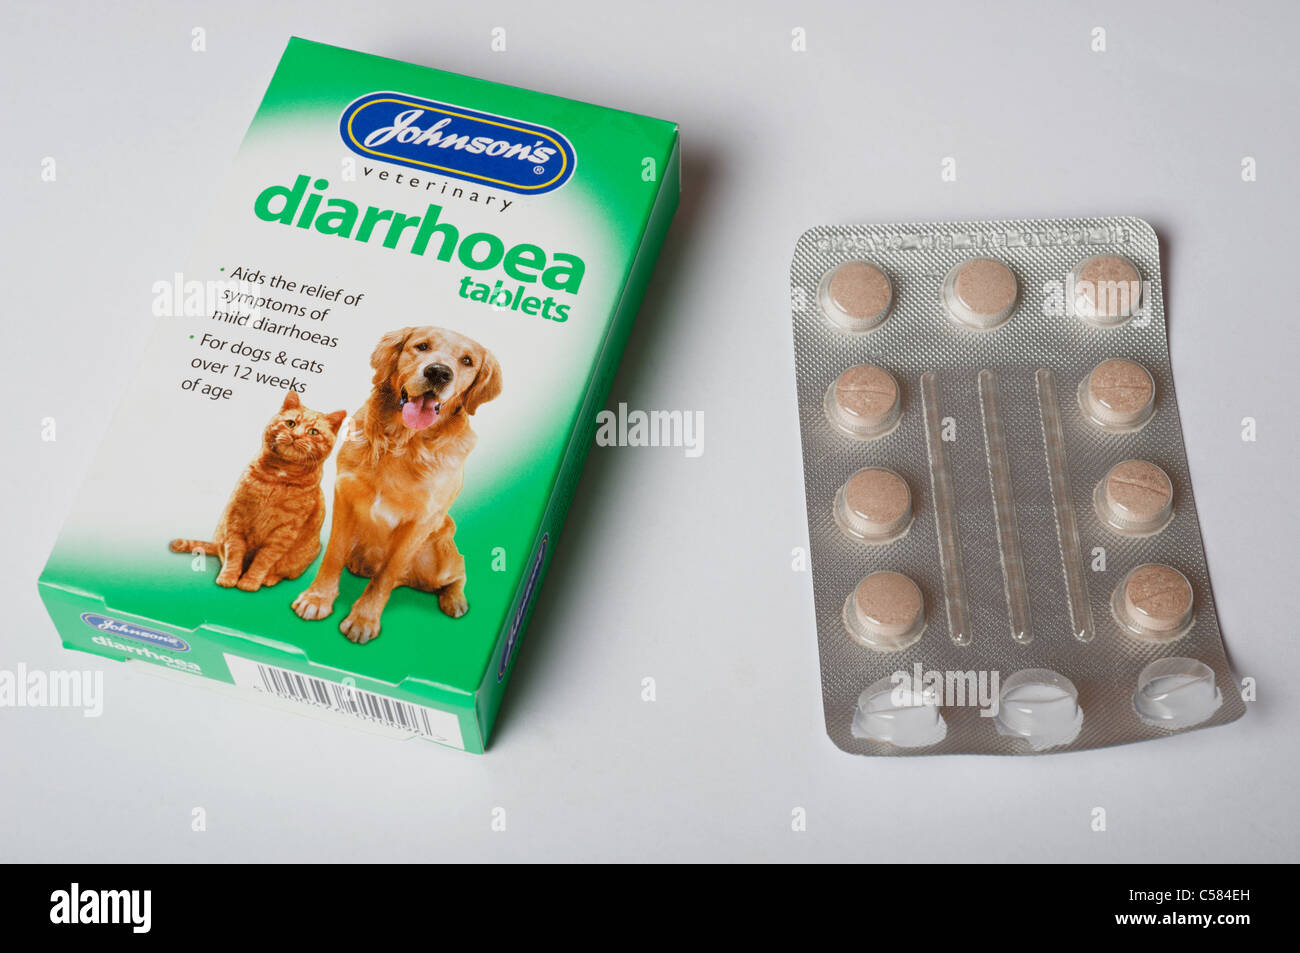 Johnson's pet diarrhoea tablets Stock Photo